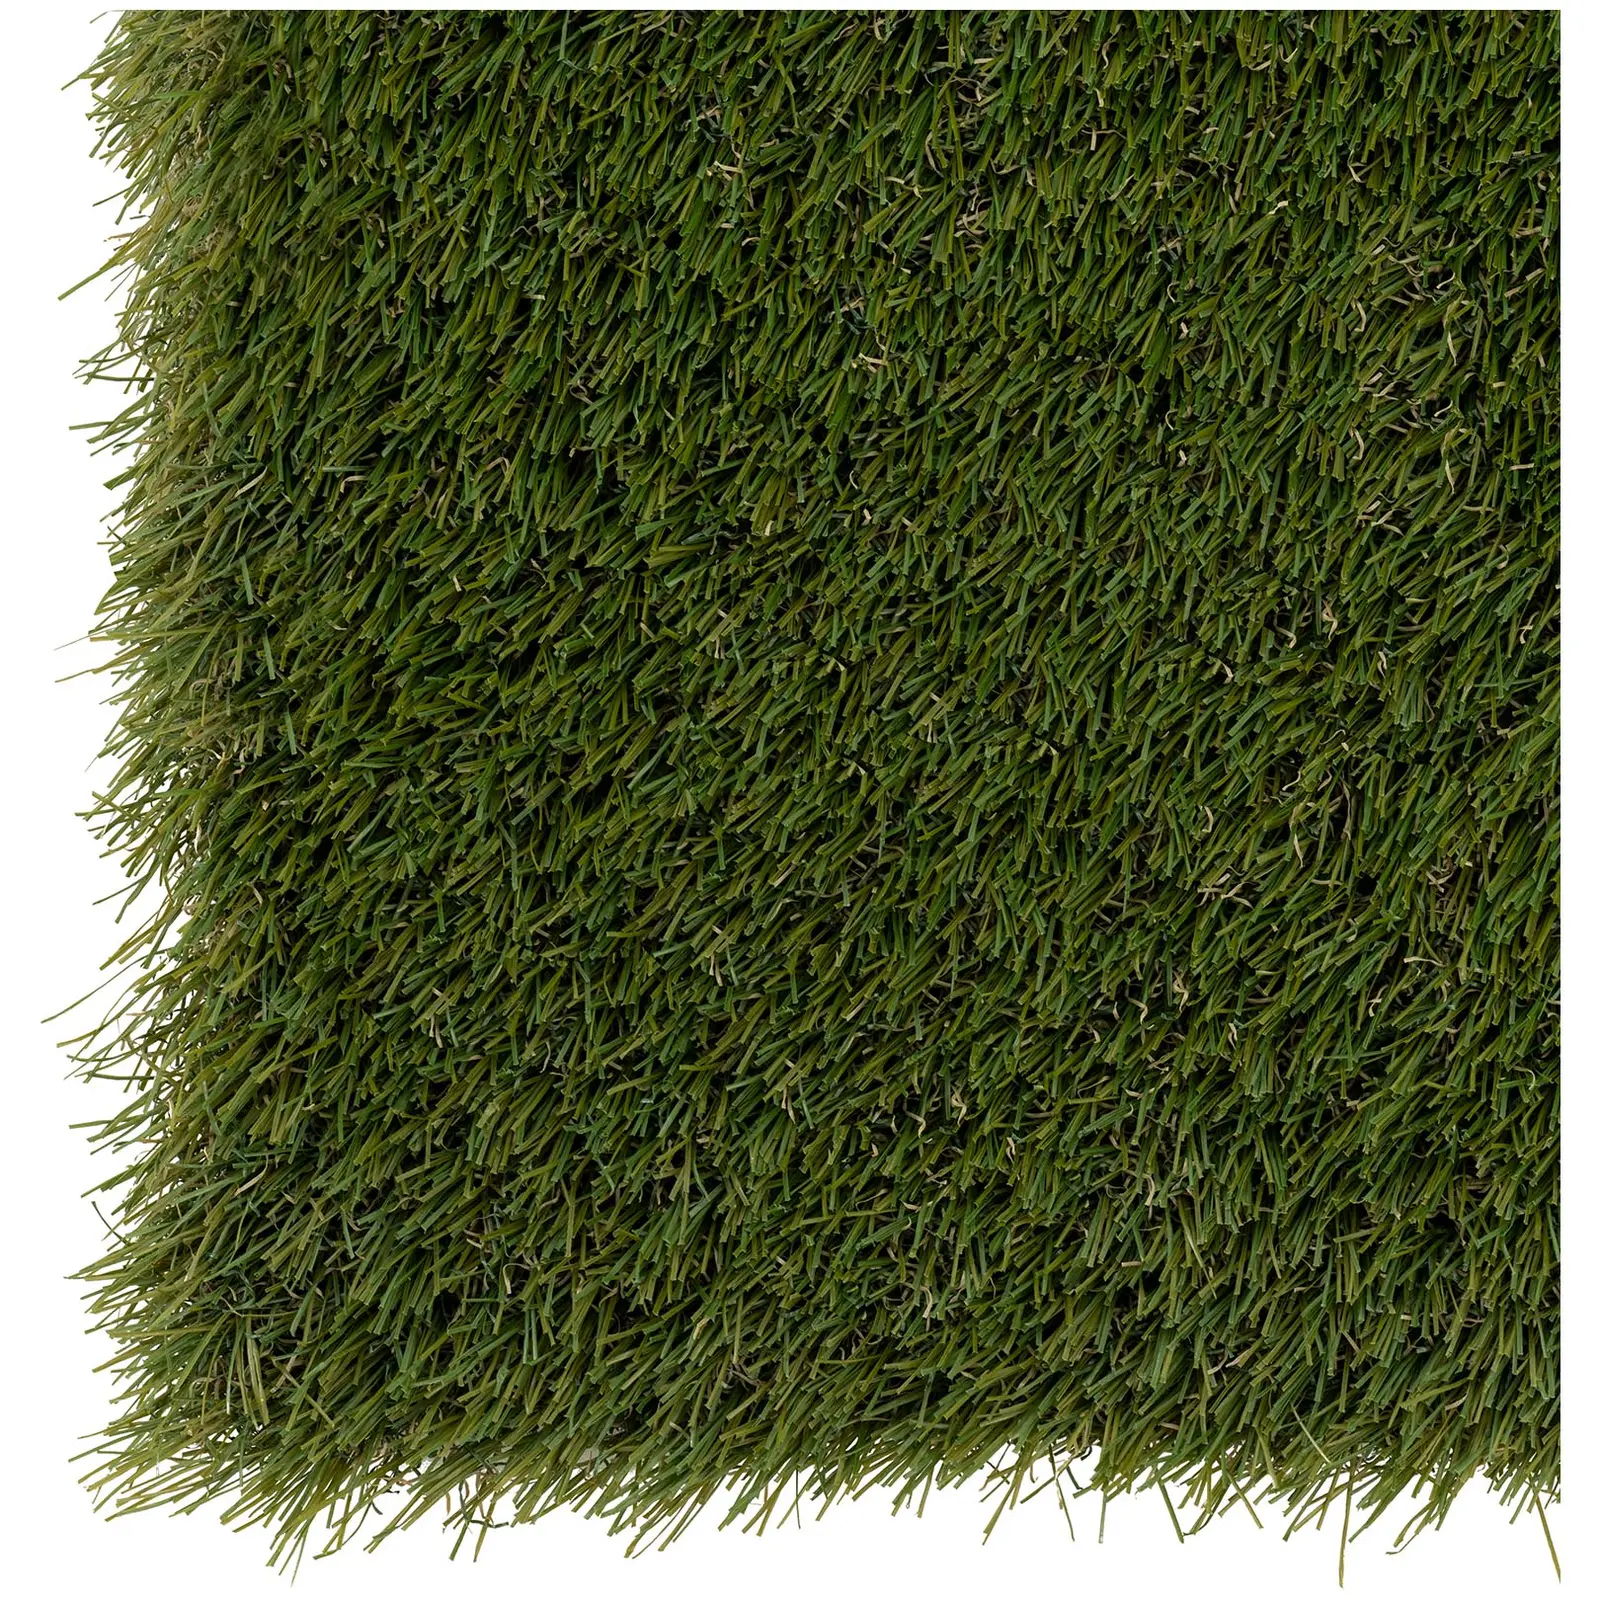 Sztuczna trawa - 507 x 200 cm - wysokość: 30 mm - szybkość ściegu: 20/10 cm - odporność na promieniowanie UV